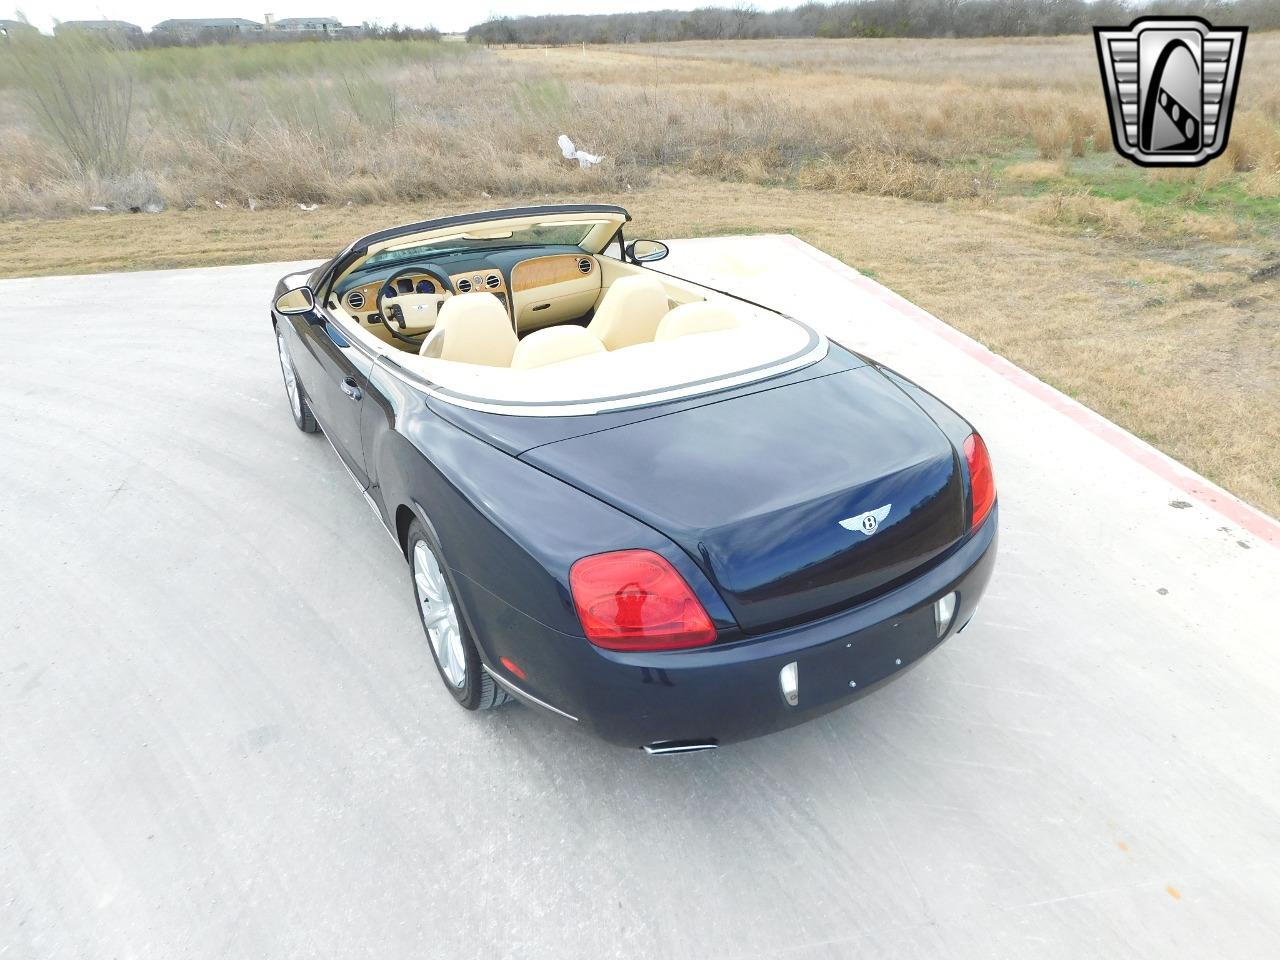 2009 Bentley Continental